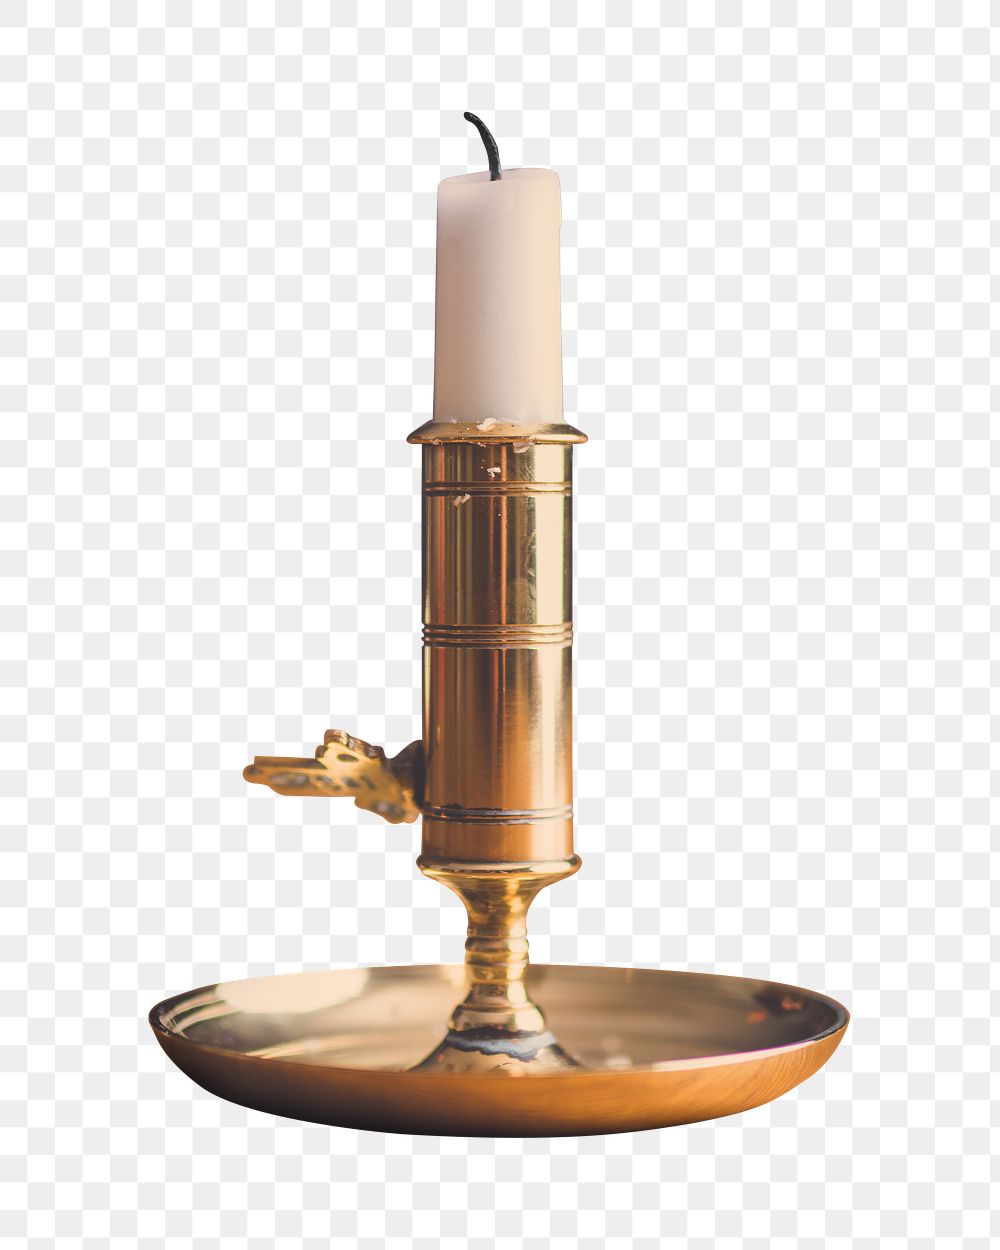 Gold candle holder png sticker, transparent background